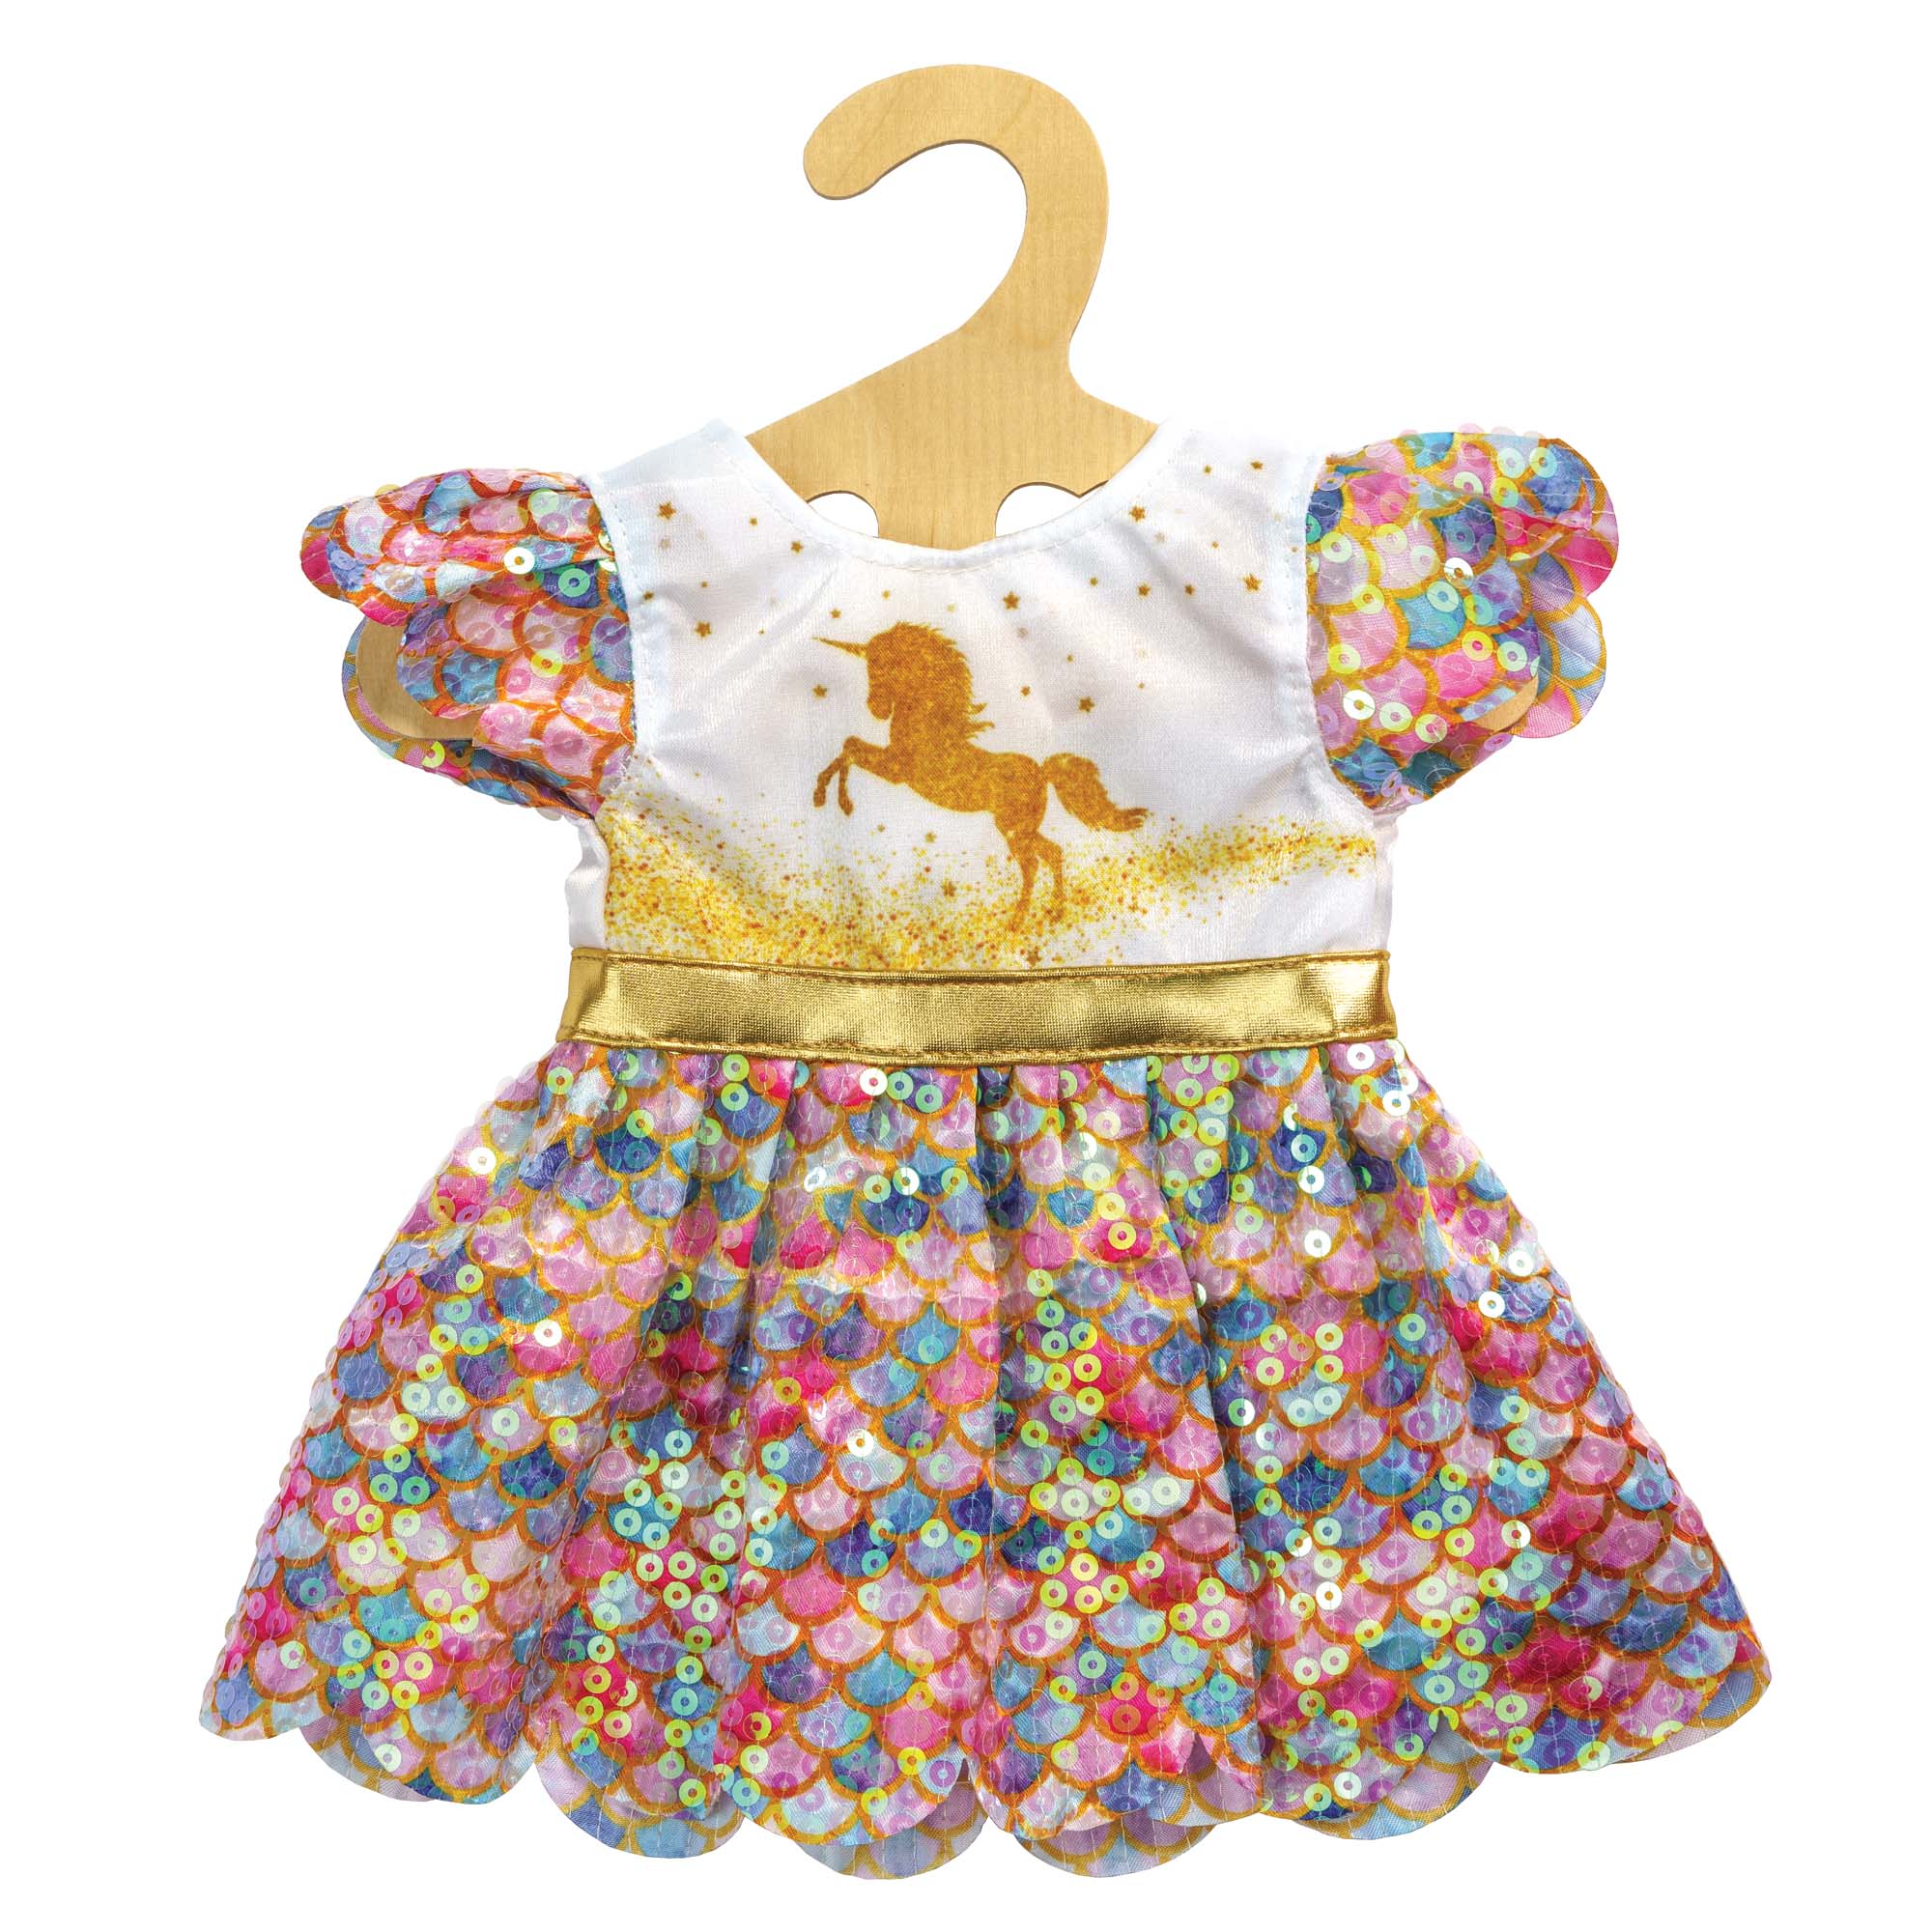 Größe 20-25 cm Kleid für Puppen im Design Schutzengel mit goldenen Flügeln und Sternen-Haarband Heless 9152